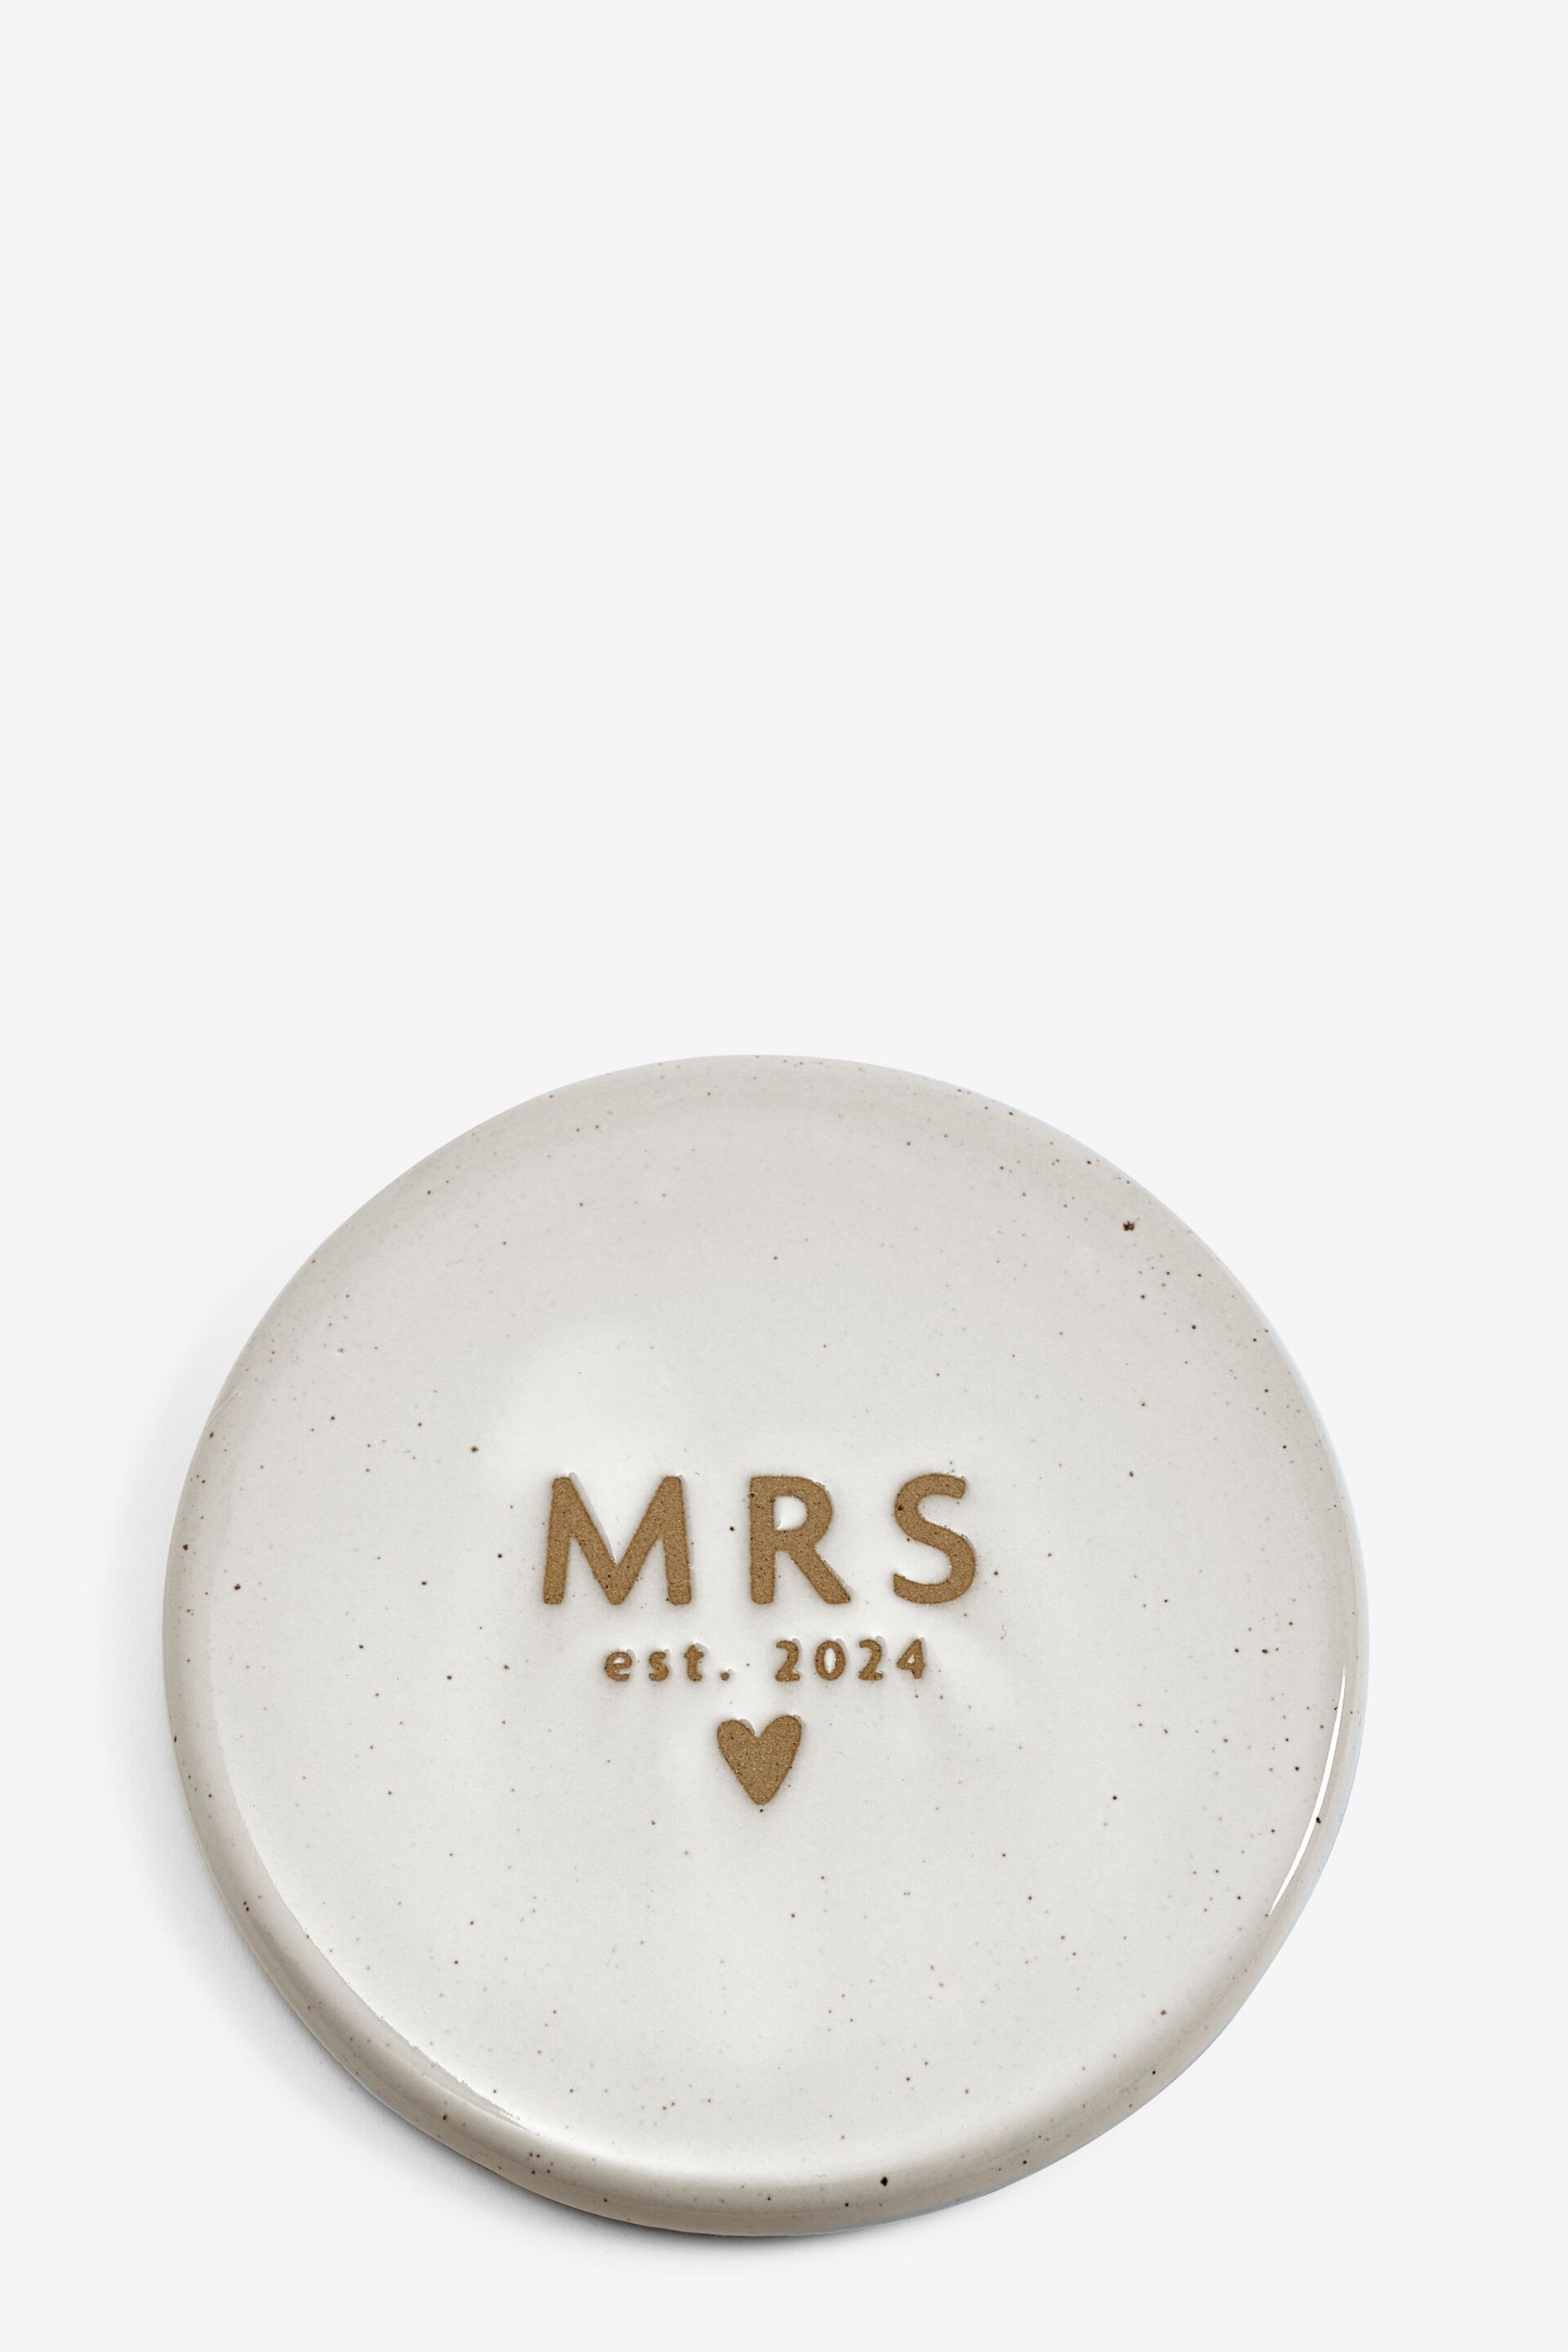 White Established In 2024 Wedding Coaster MRS - Image 2 of 4